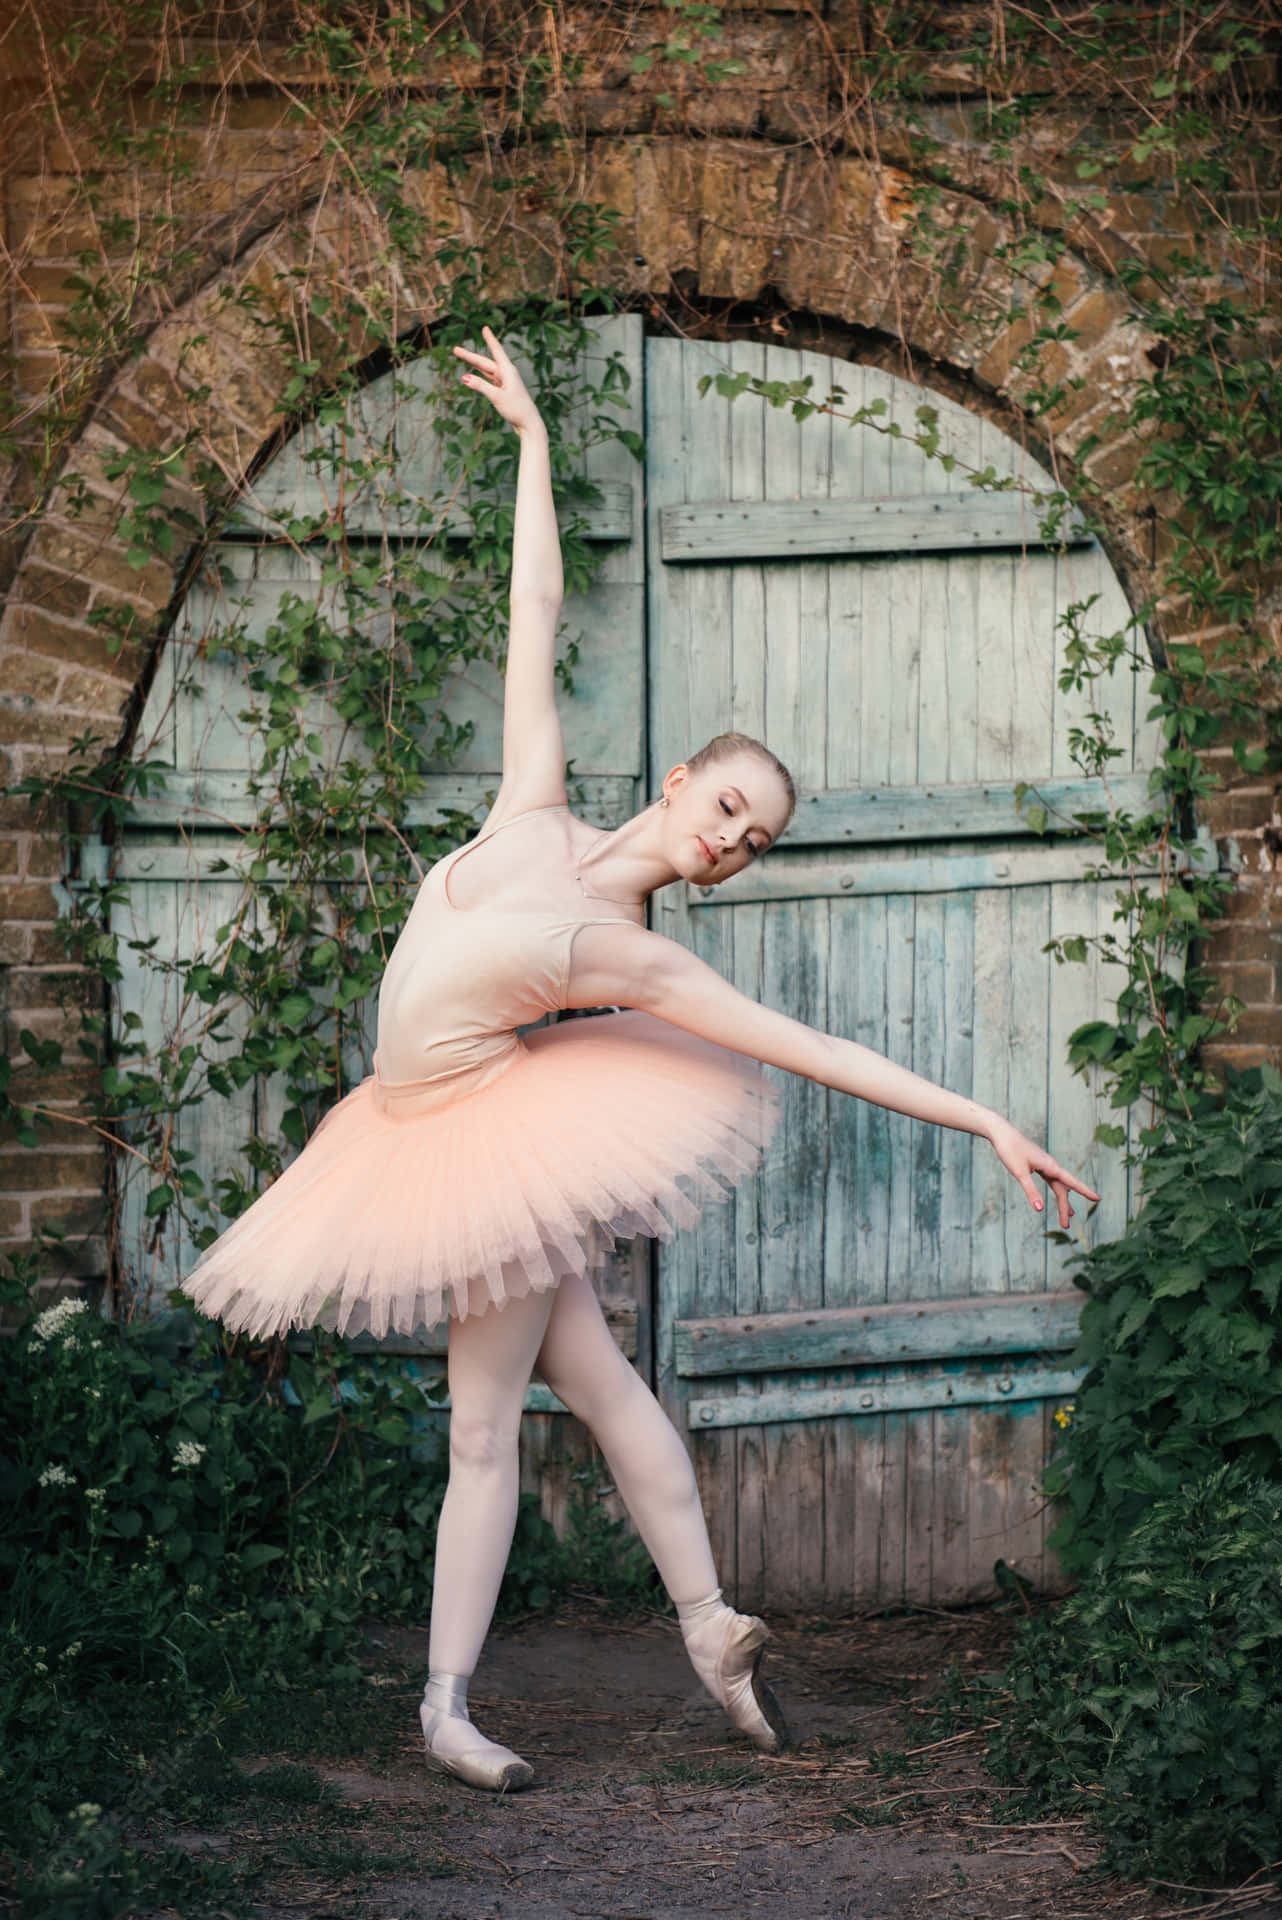 Unagraziosa Ballerina Di Balletto In Posa Con Un Costume Classico Romantico.